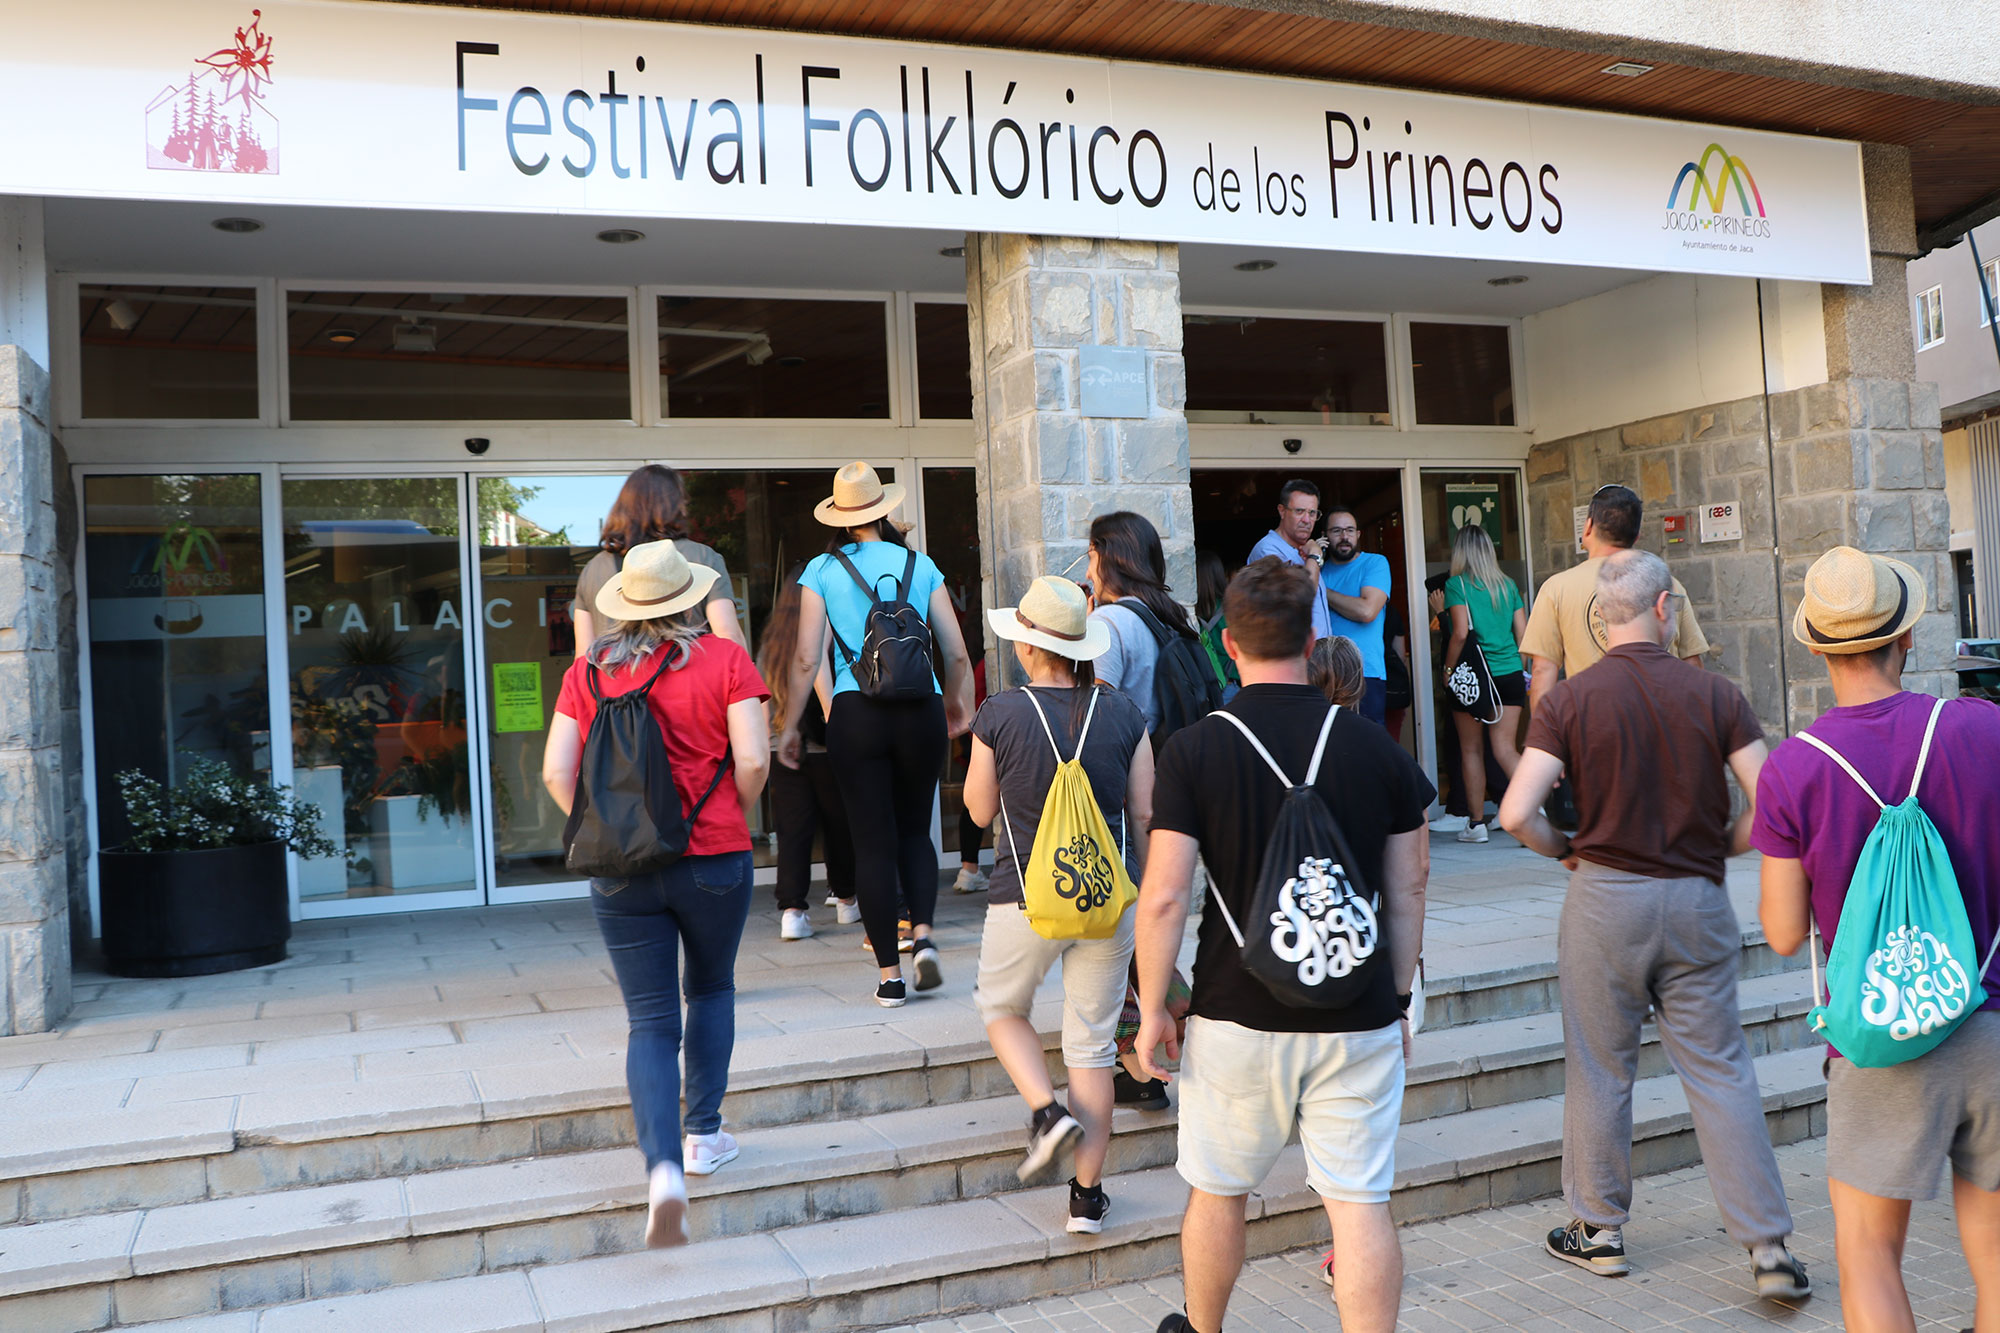 Llegada de grupos participantes en el Festival Foklórico de los Pirineos